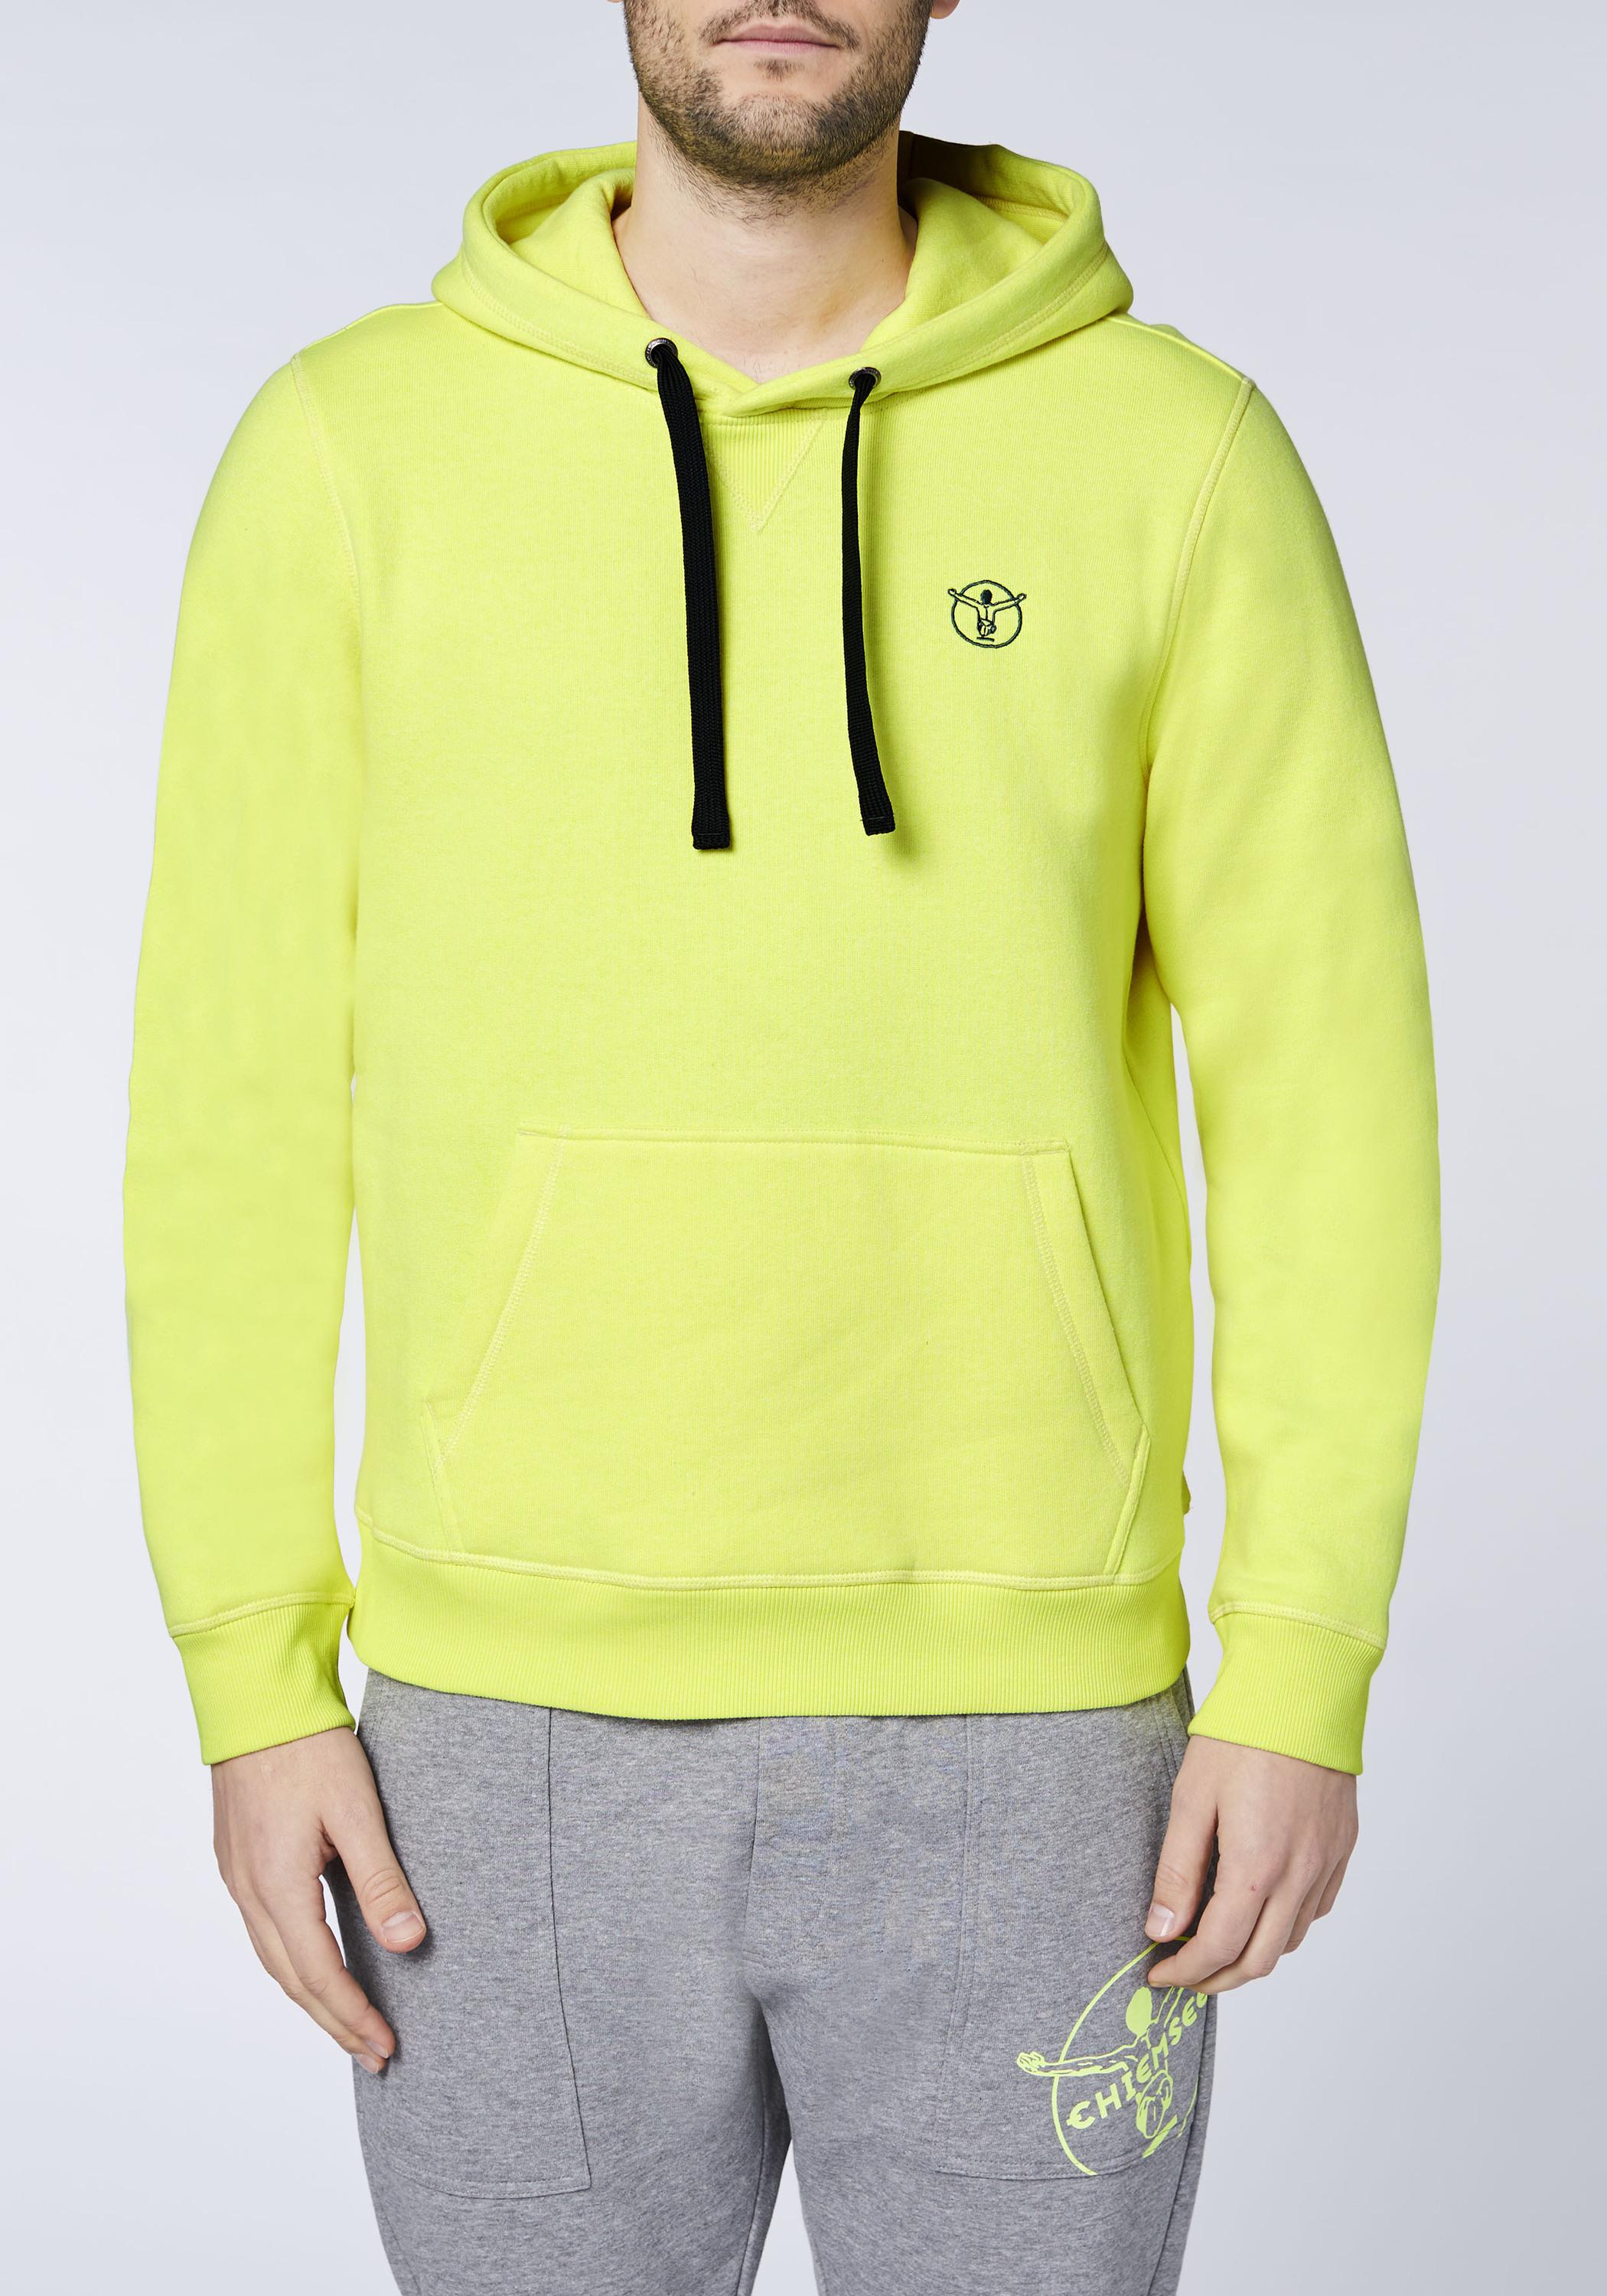 Sweatshirt von im Kapuzensweatshirt kaufen Herren Online SportScheck Yellow Chiemsee Shop Safety